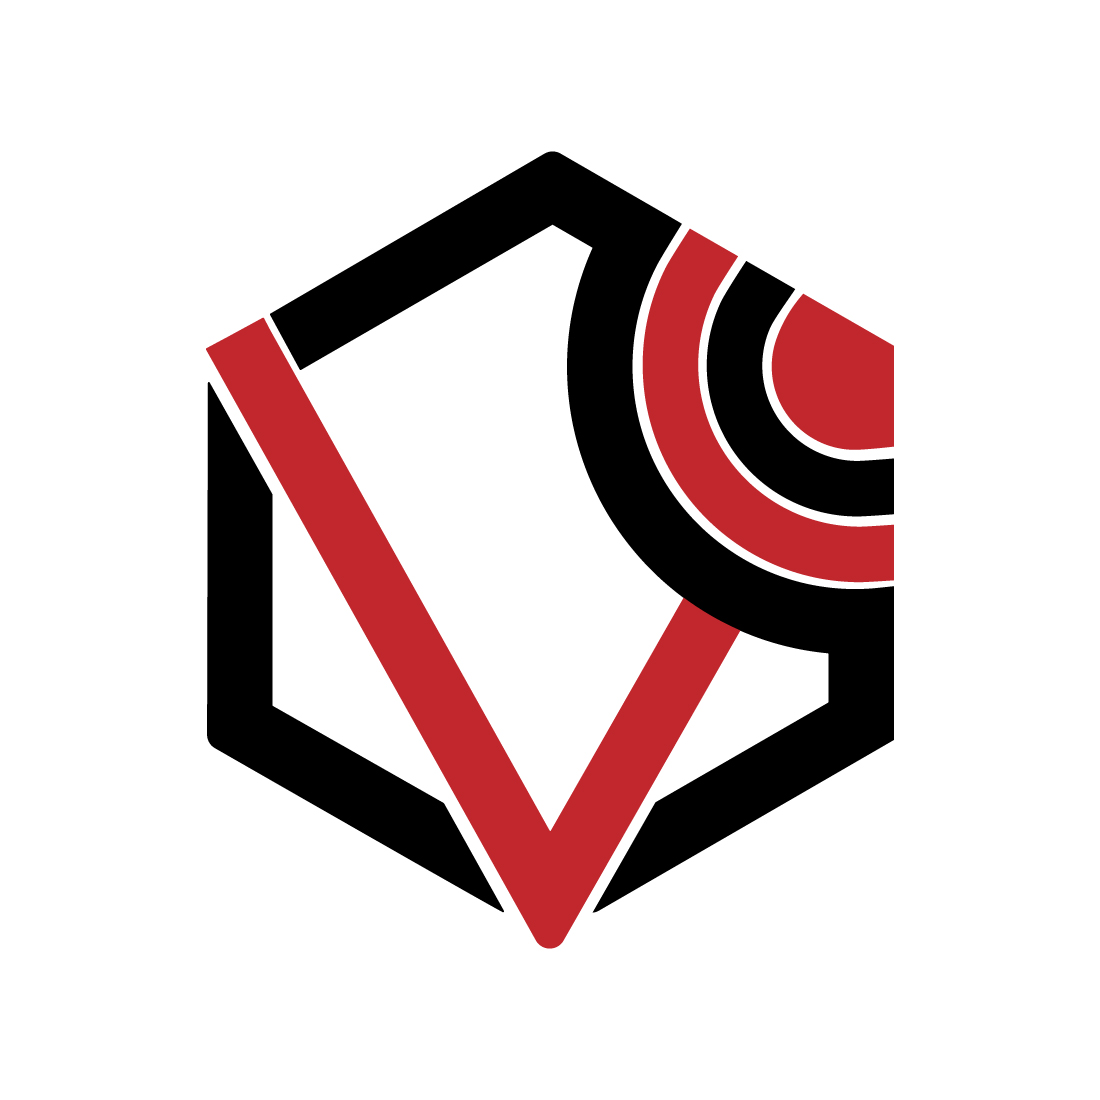 Initials V letters logo vector images V logo design red and black color polygon design preview image.